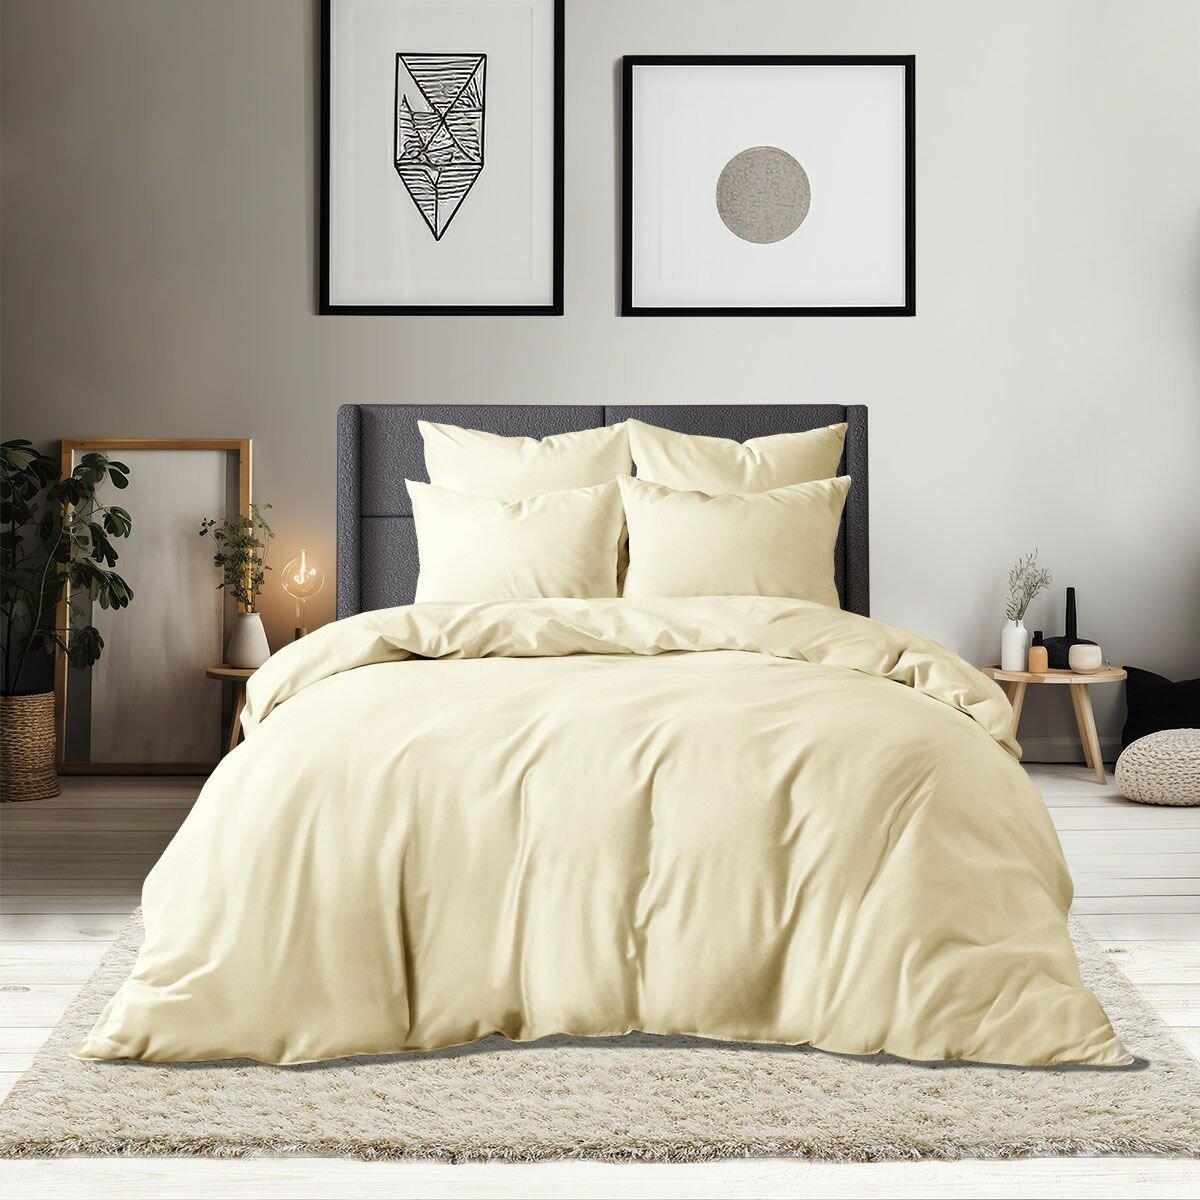 Комплект постельного белья 1,5-спальный размер Monochrome сатин 100% хлопок / 2 наволочки 70*70 /Бежевый/премиум качество